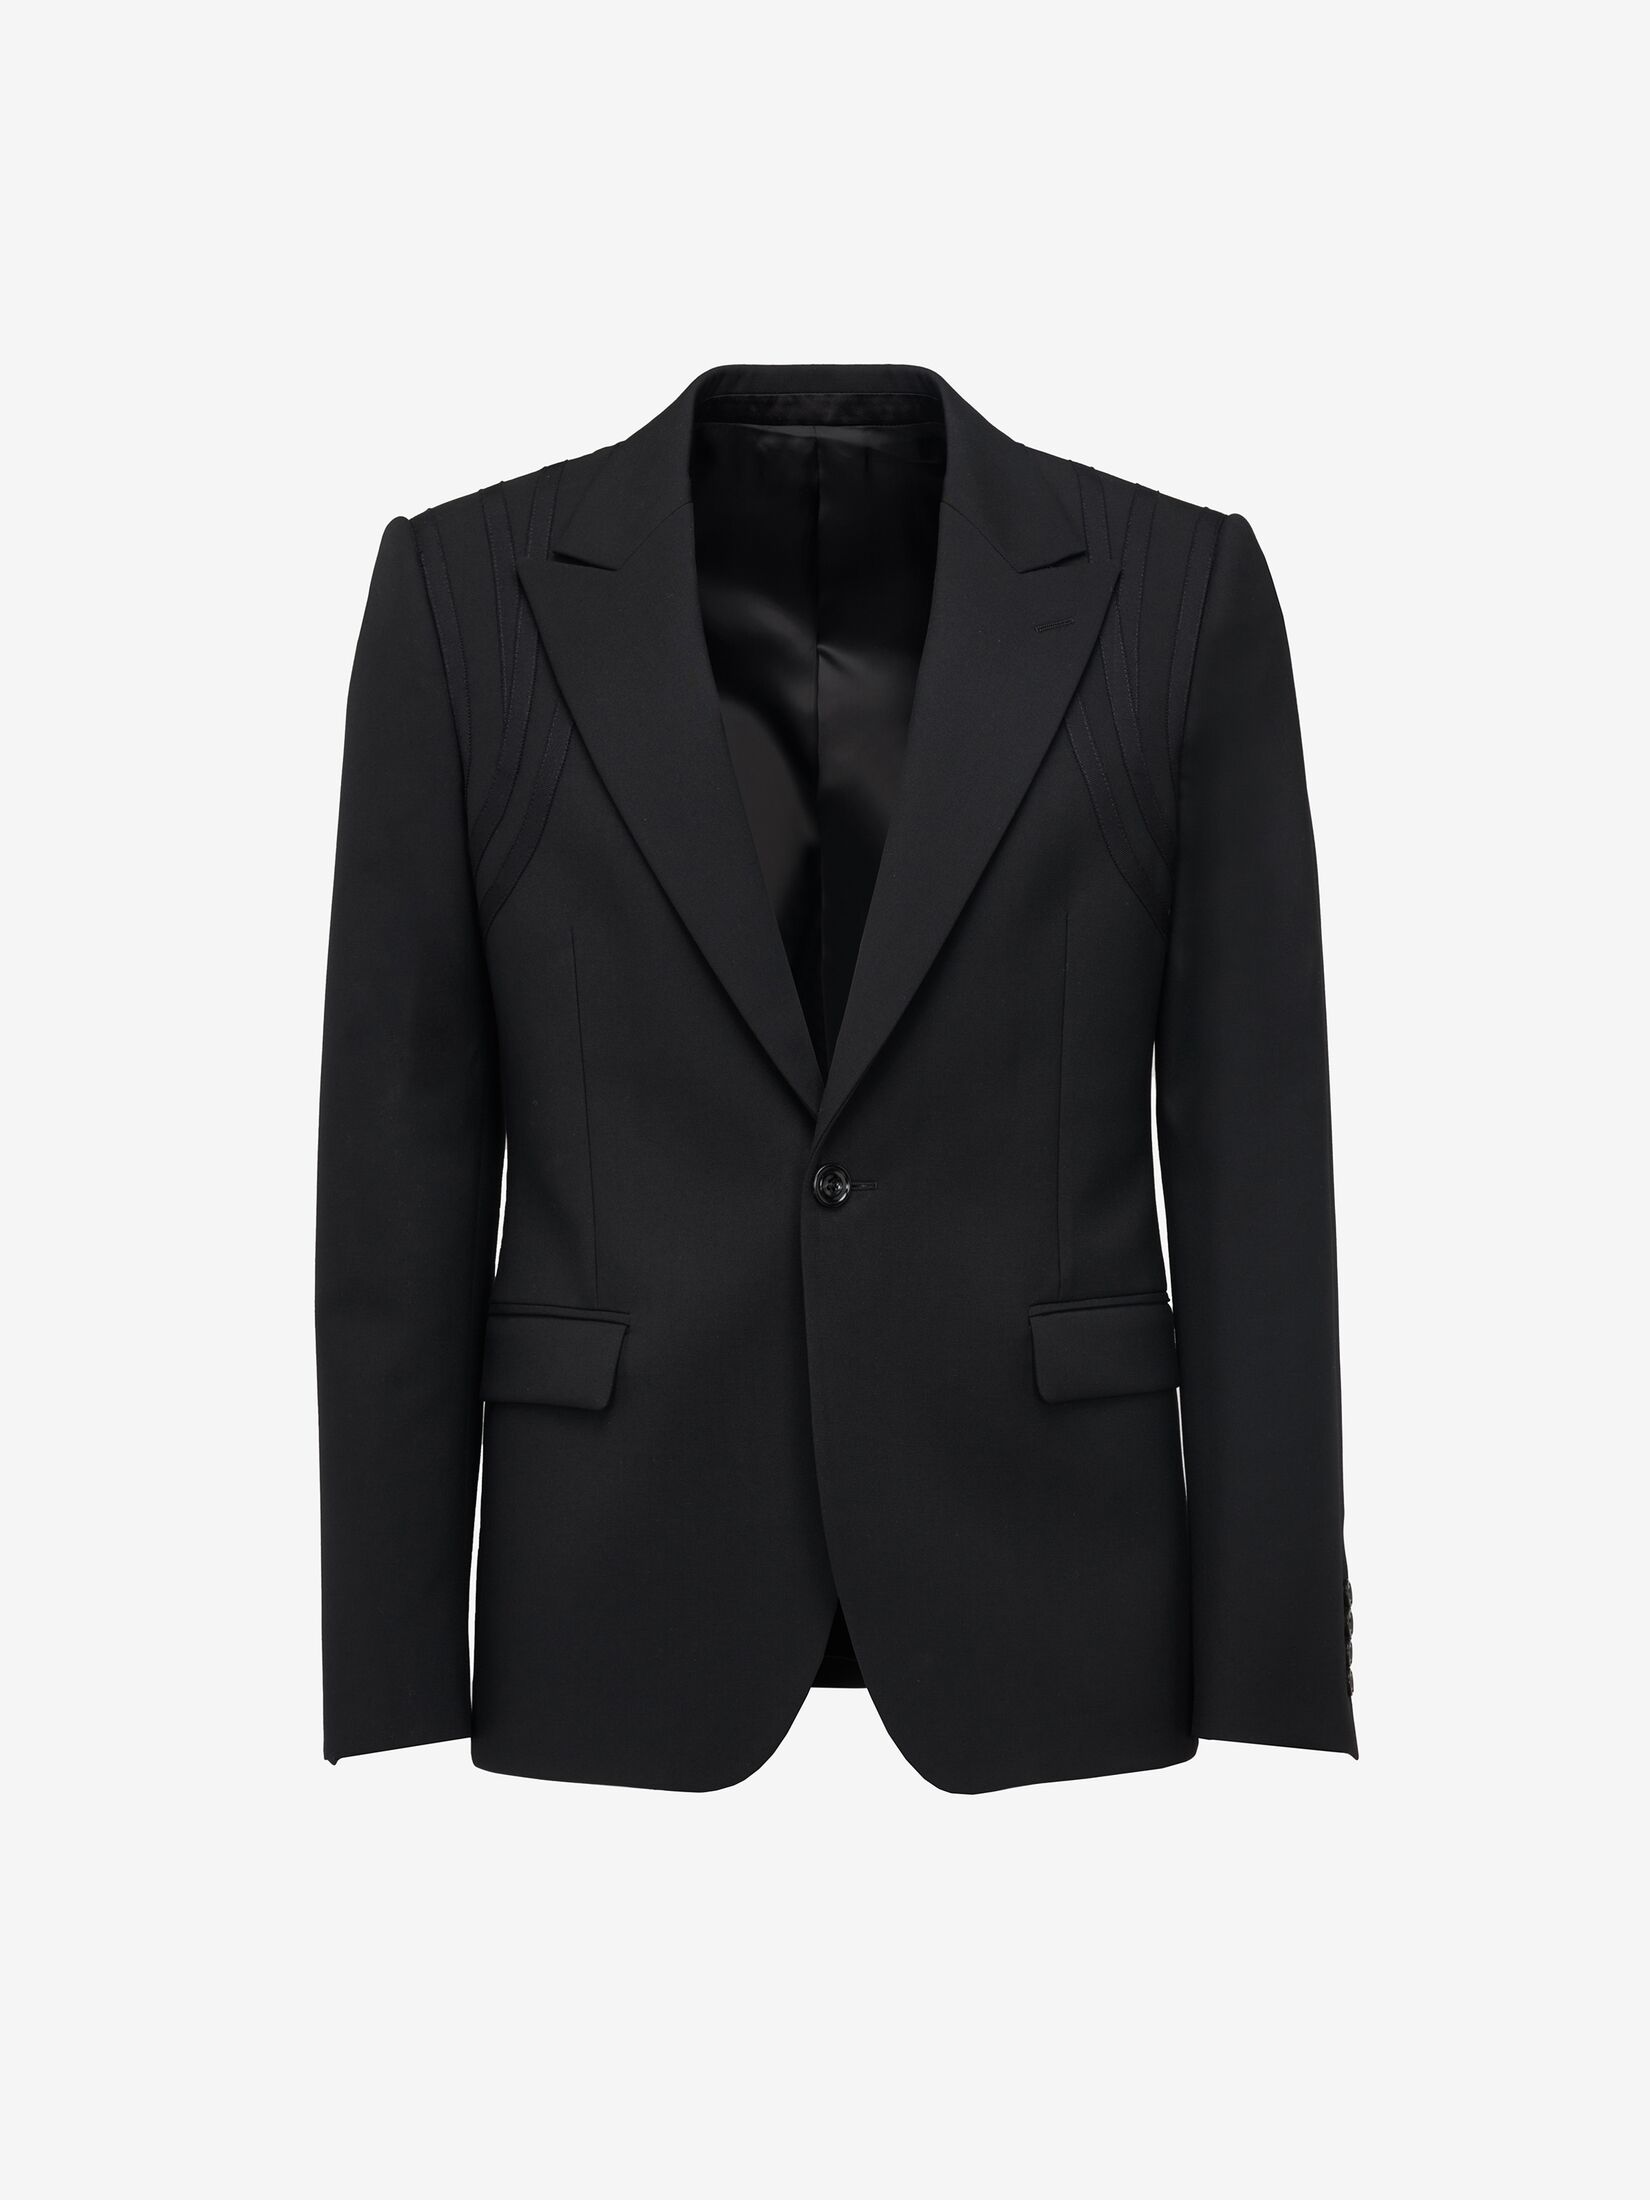 Men's Designer Jackets & Luxury Blazers | Alexander McQueen US